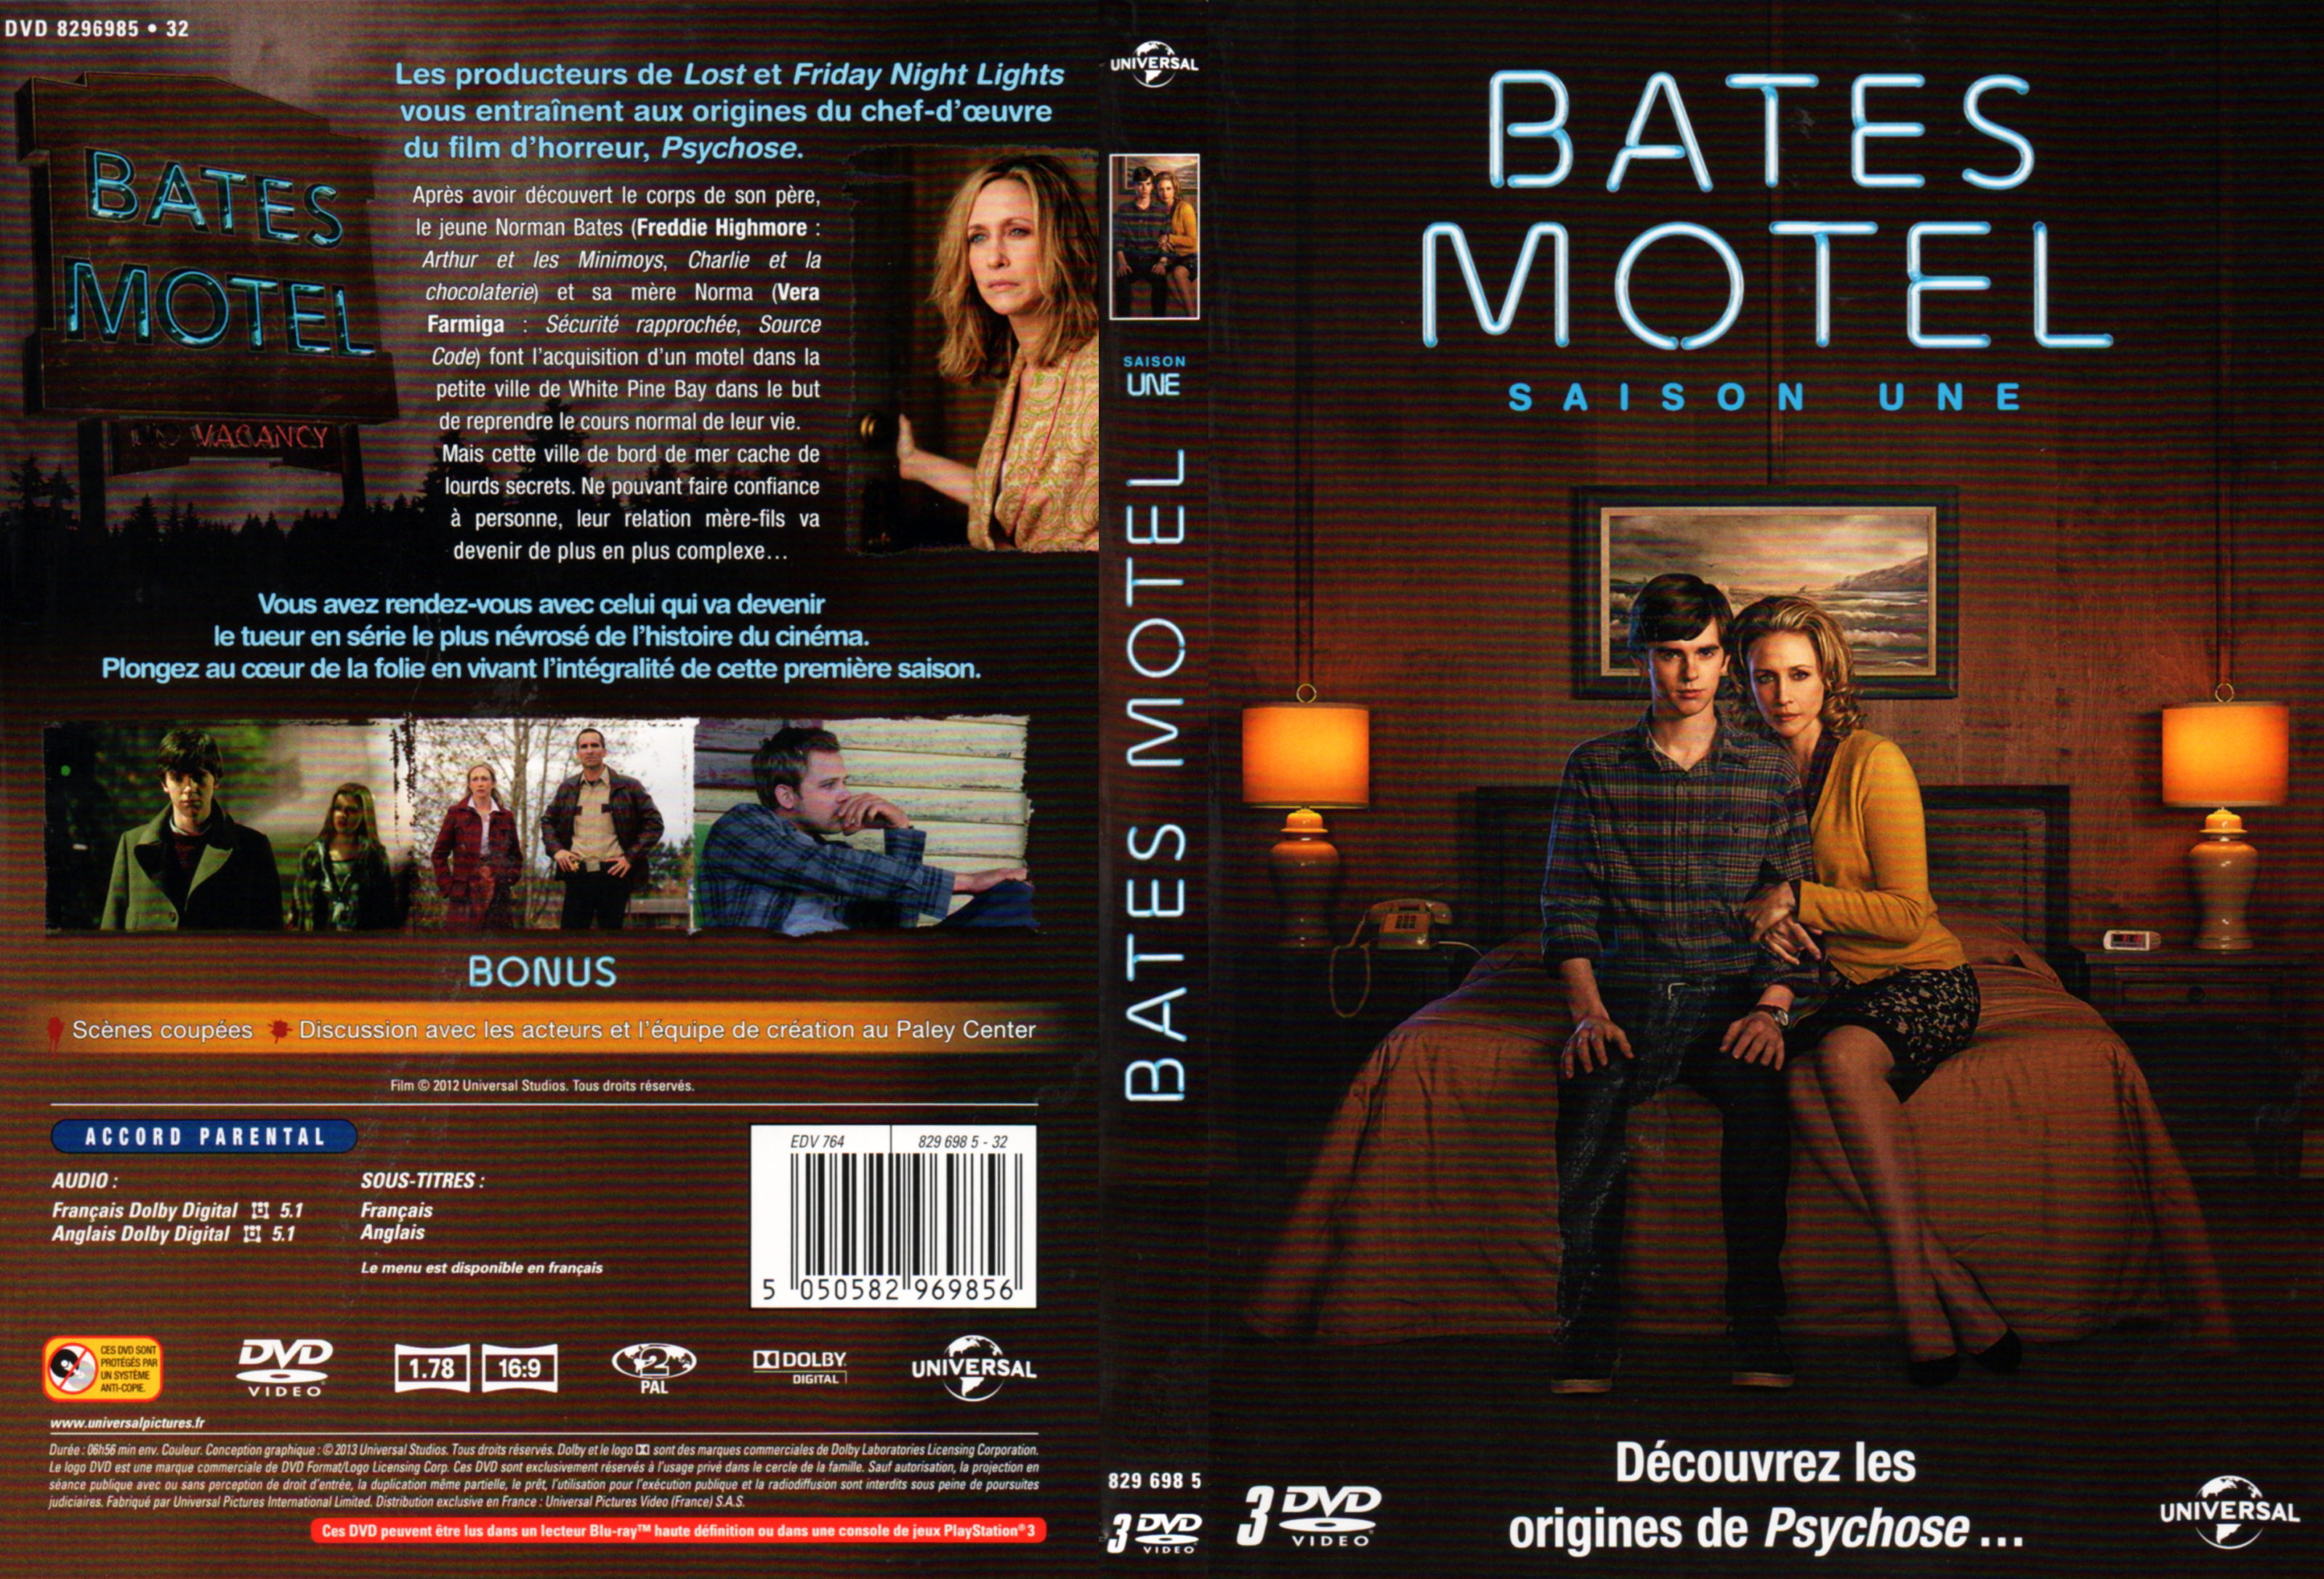 Jaquette DVD Bates motel Saison 1 COFFRET